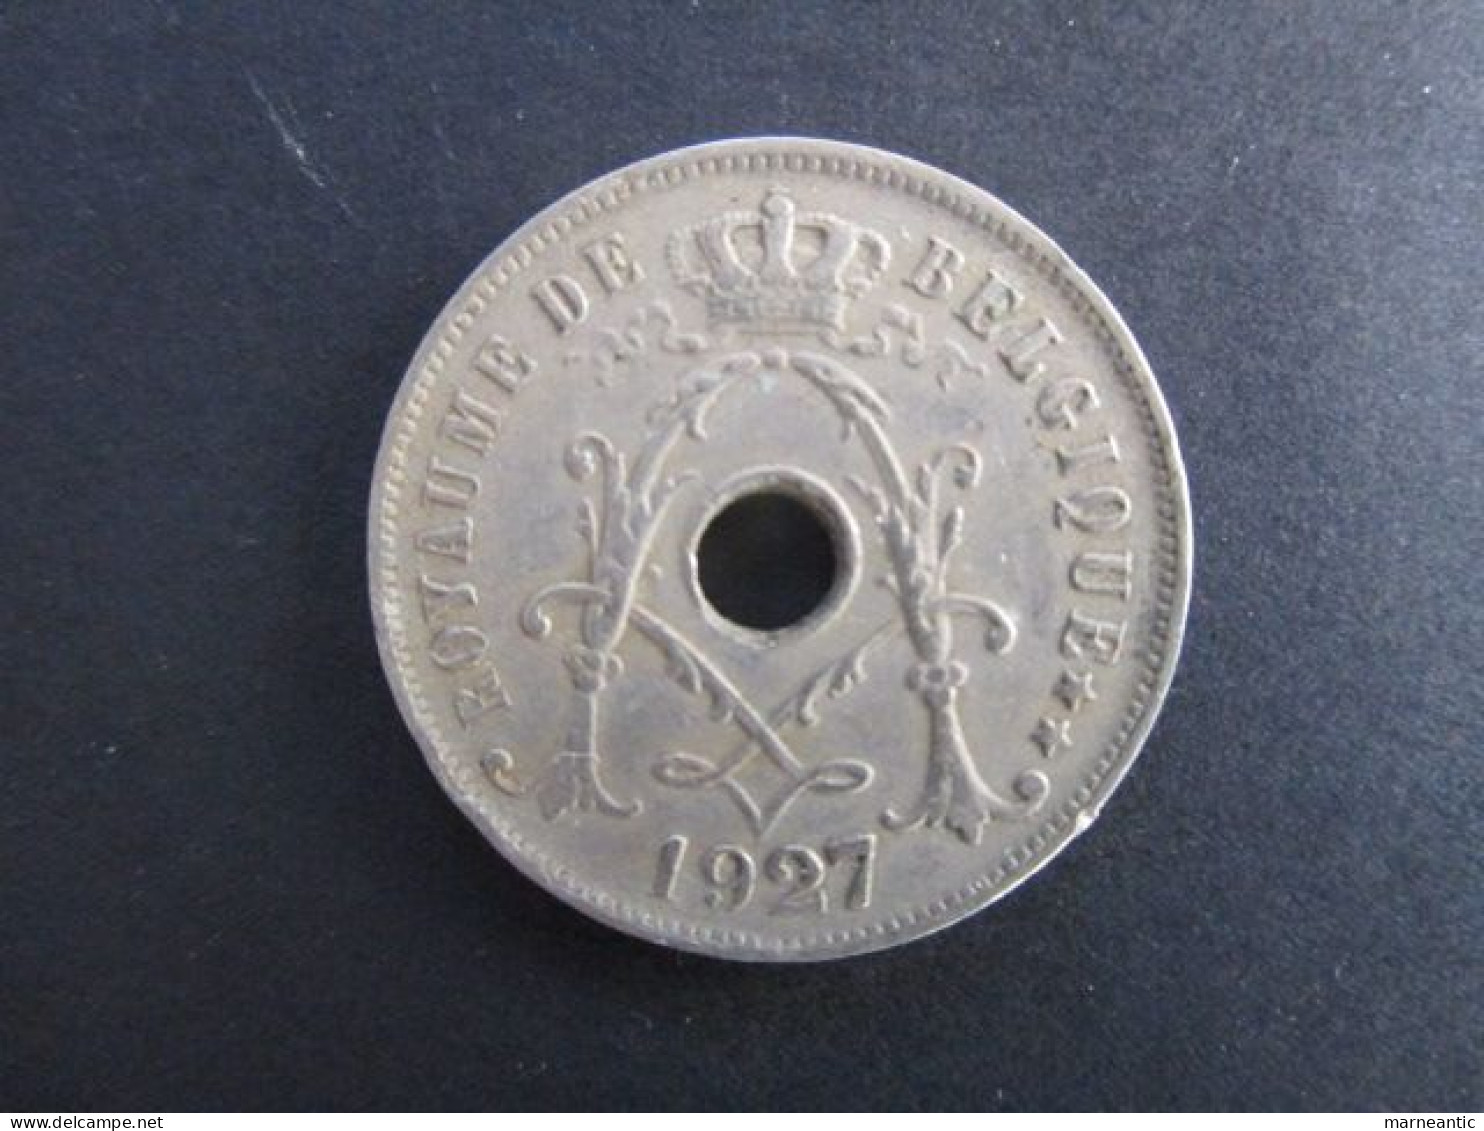 Belgique: Monnaie 25 Centimes 1927 - 25 Centimes